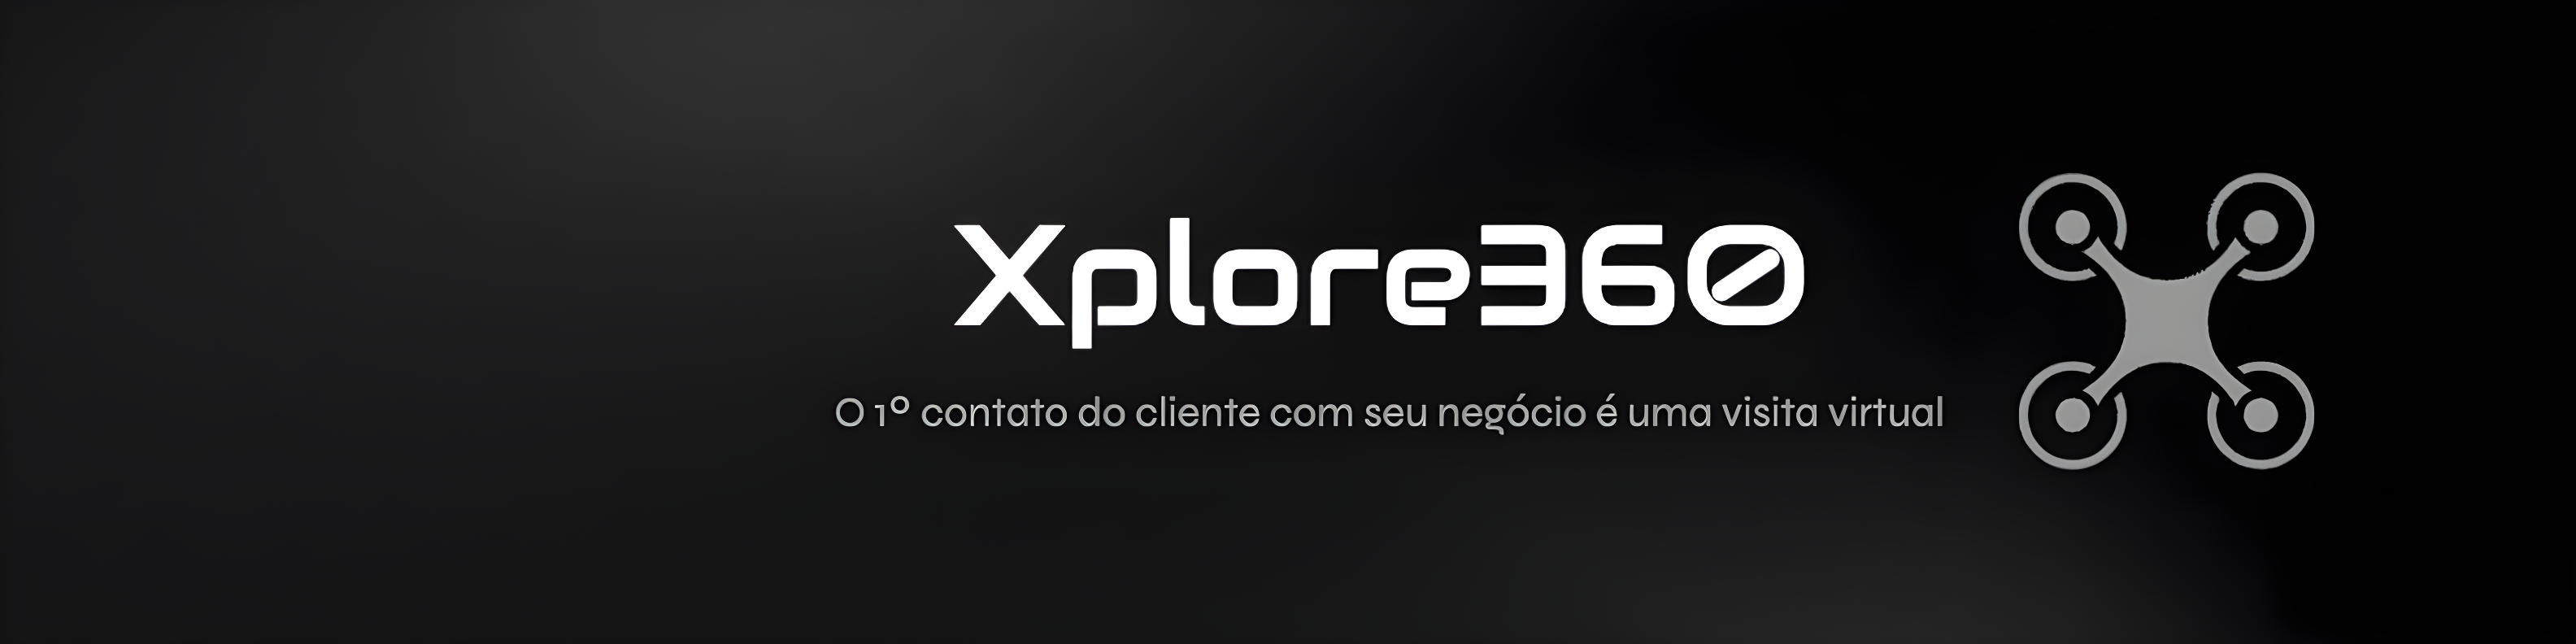 Xplore360 — Tour Virtual